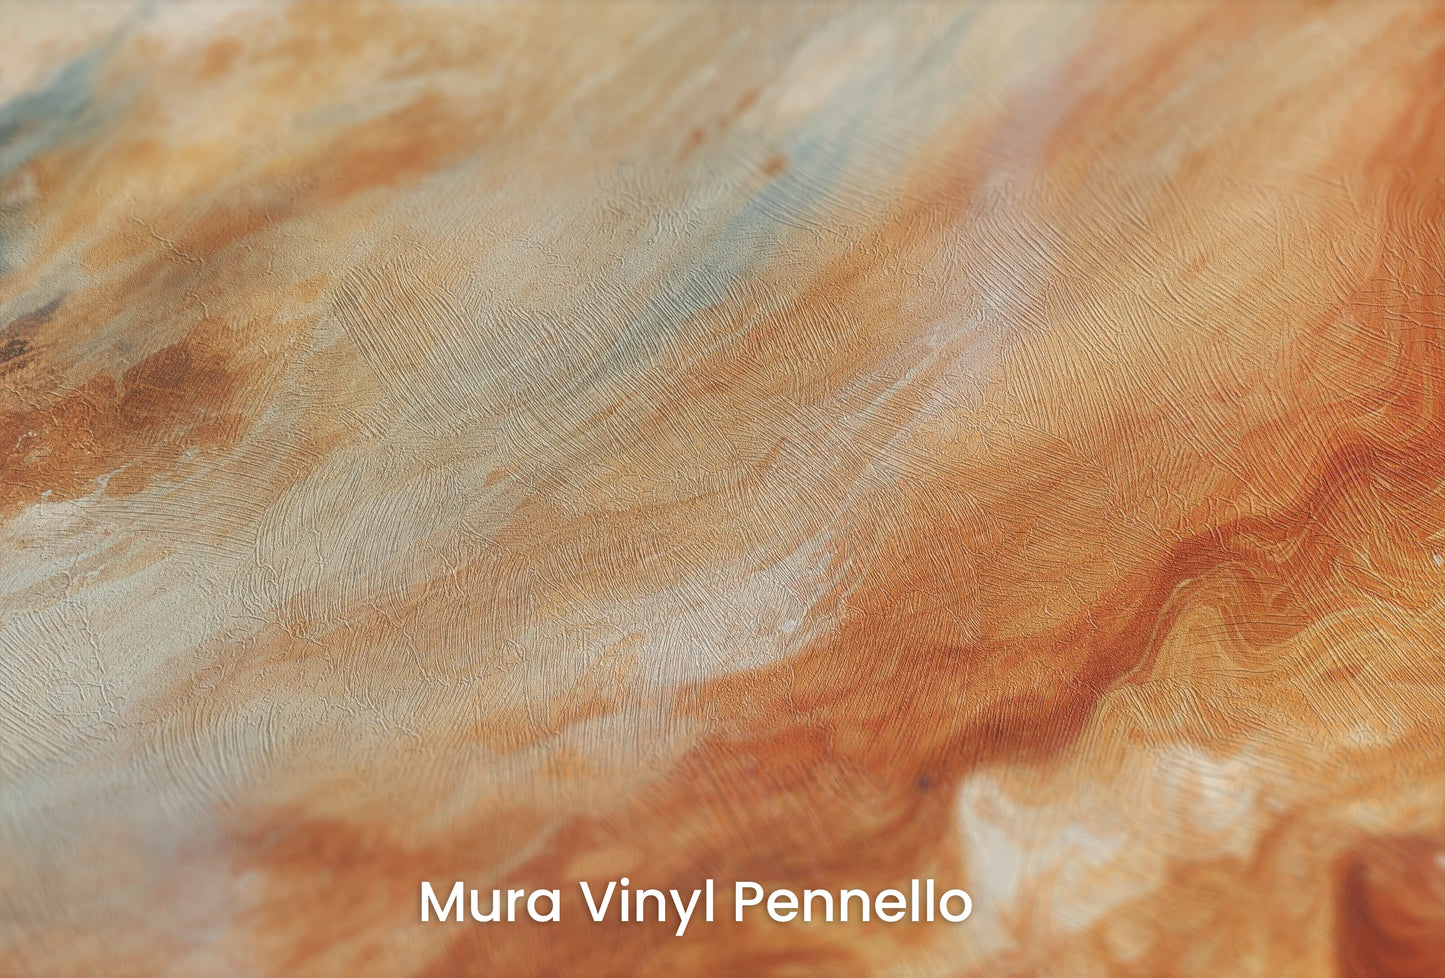 Zbliżenie na artystyczną fototapetę o nazwie Jupiter's Glow na podłożu Mura Vinyl Pennello - faktura pociągnięć pędzla malarskiego.